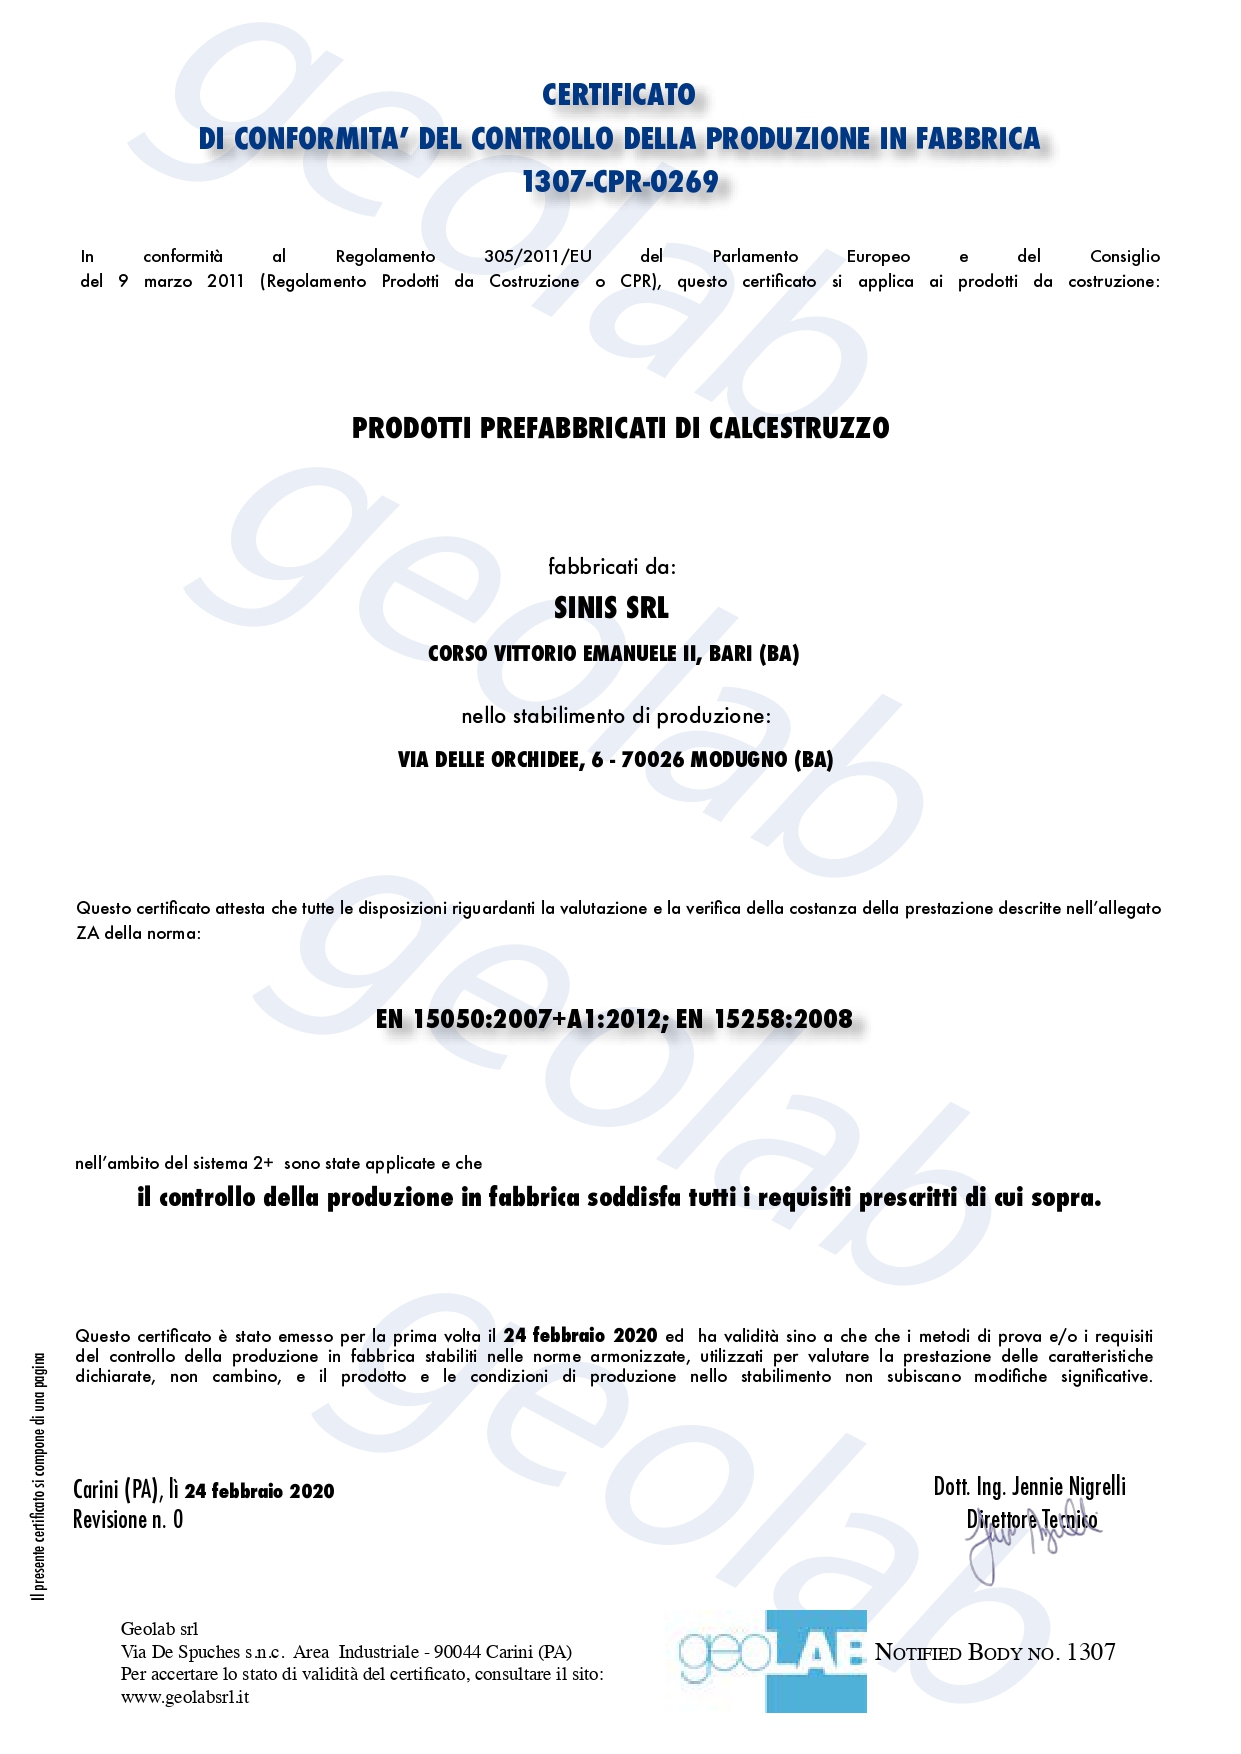 Certificato di Conformità del Controllo di Produzione in Fabbrica